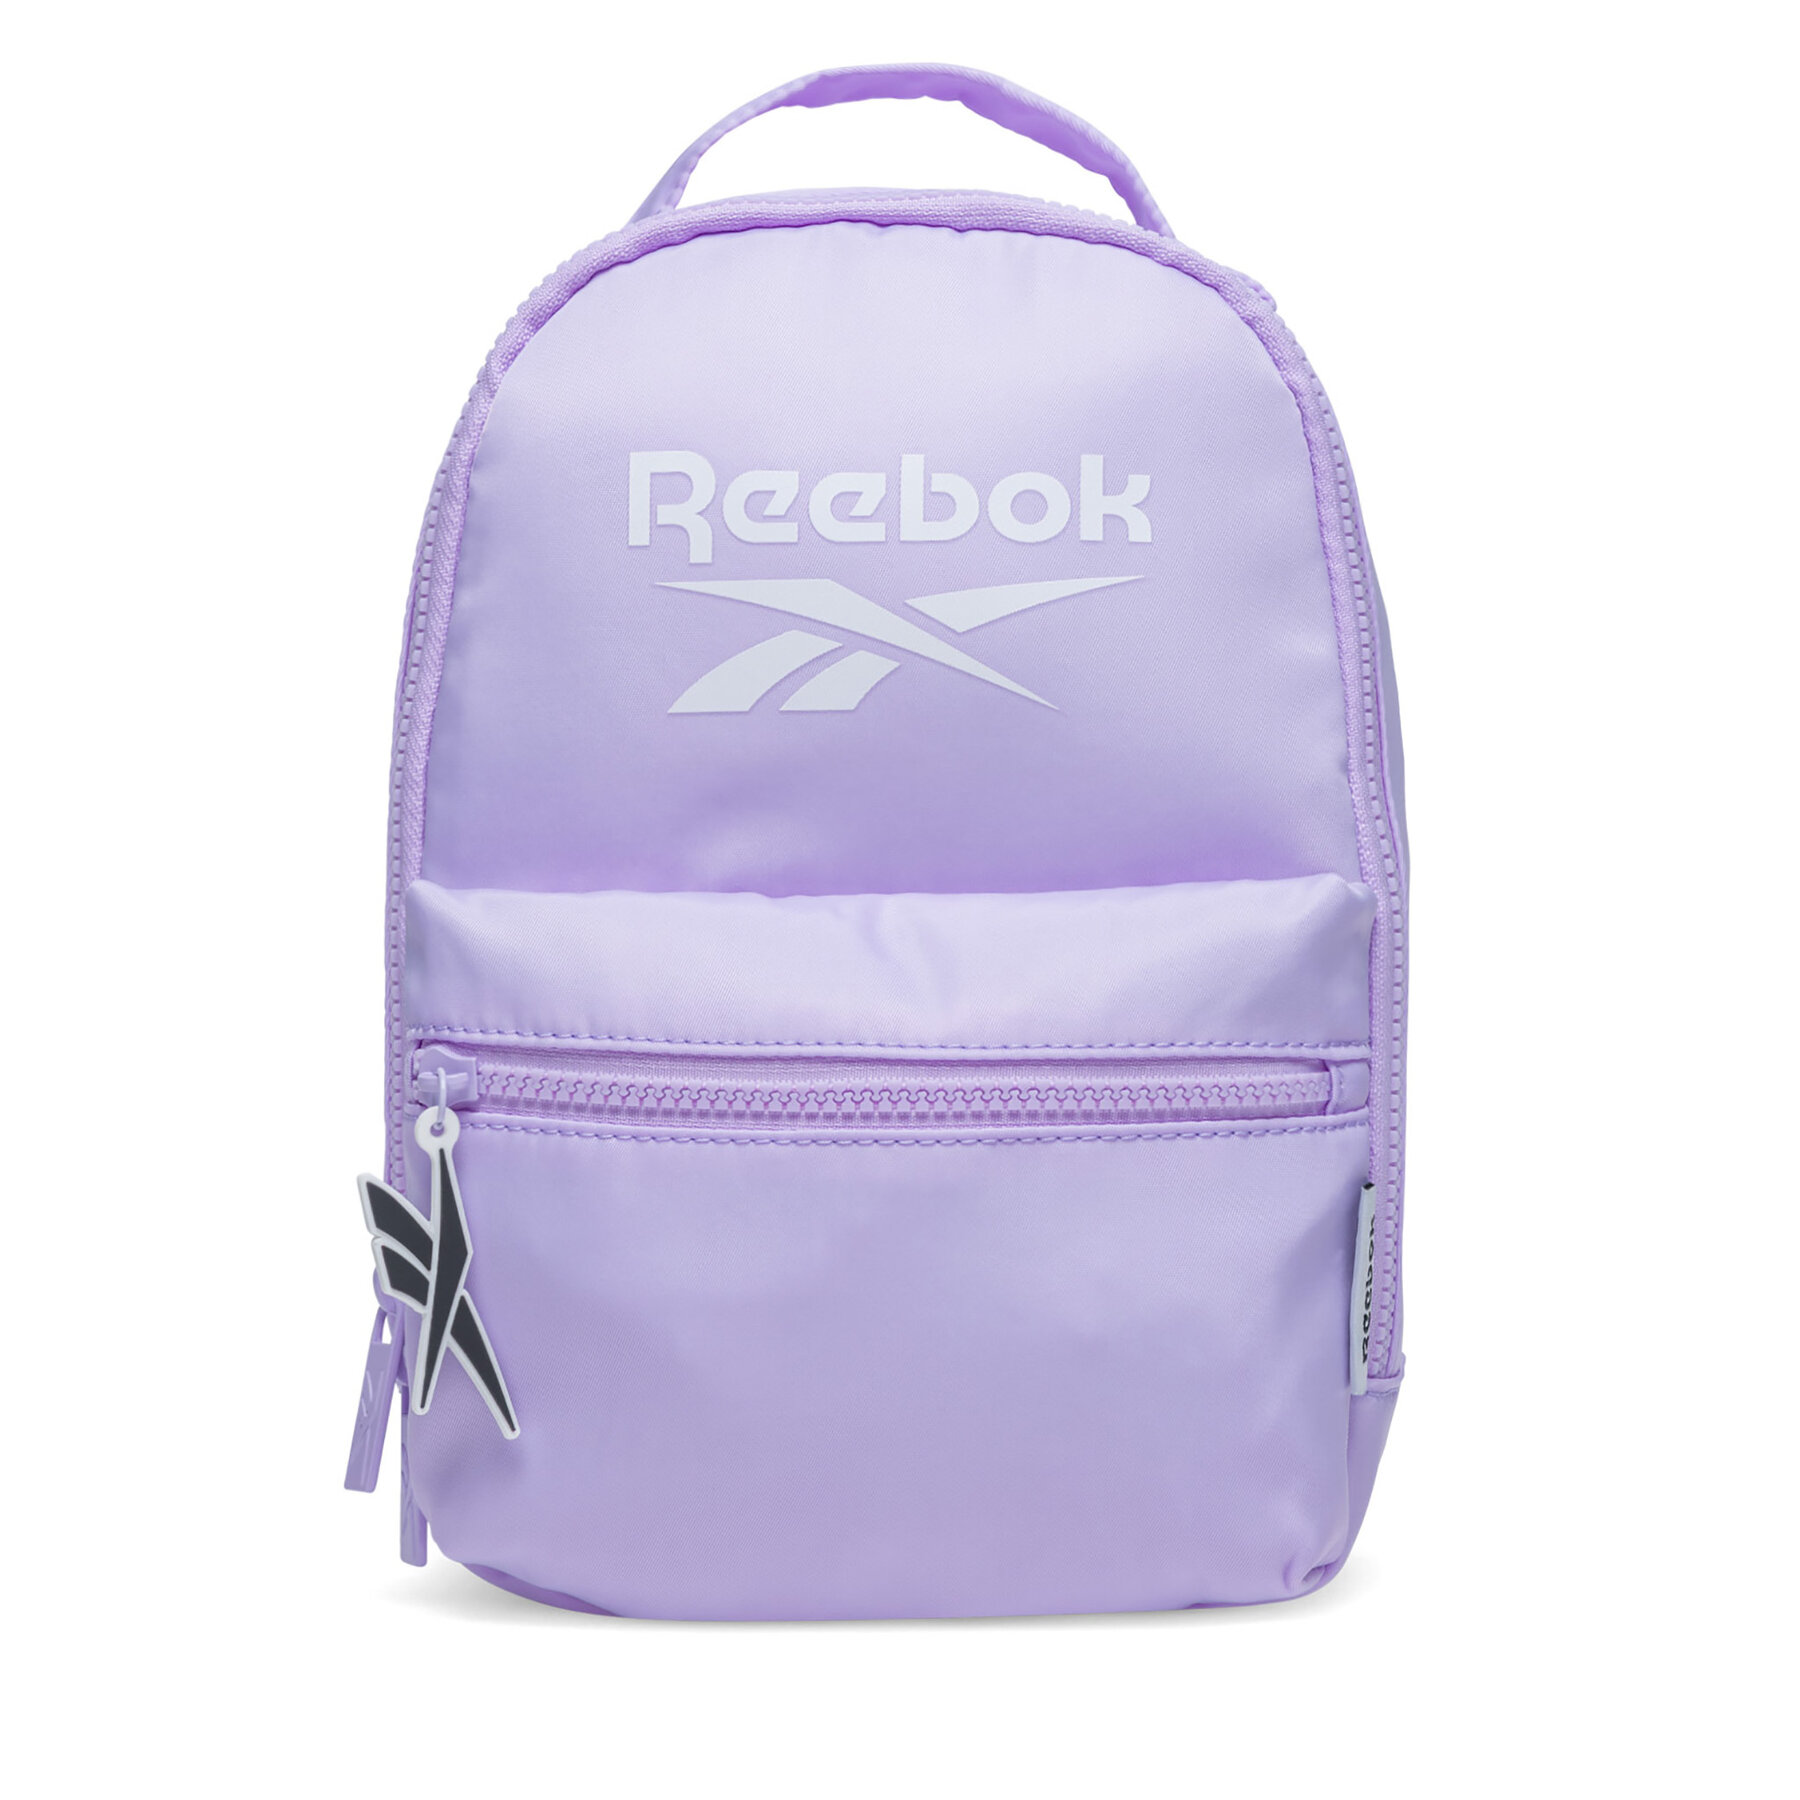 Rucksack Reebok RBK-046-CCC-05 Violett von Reebok